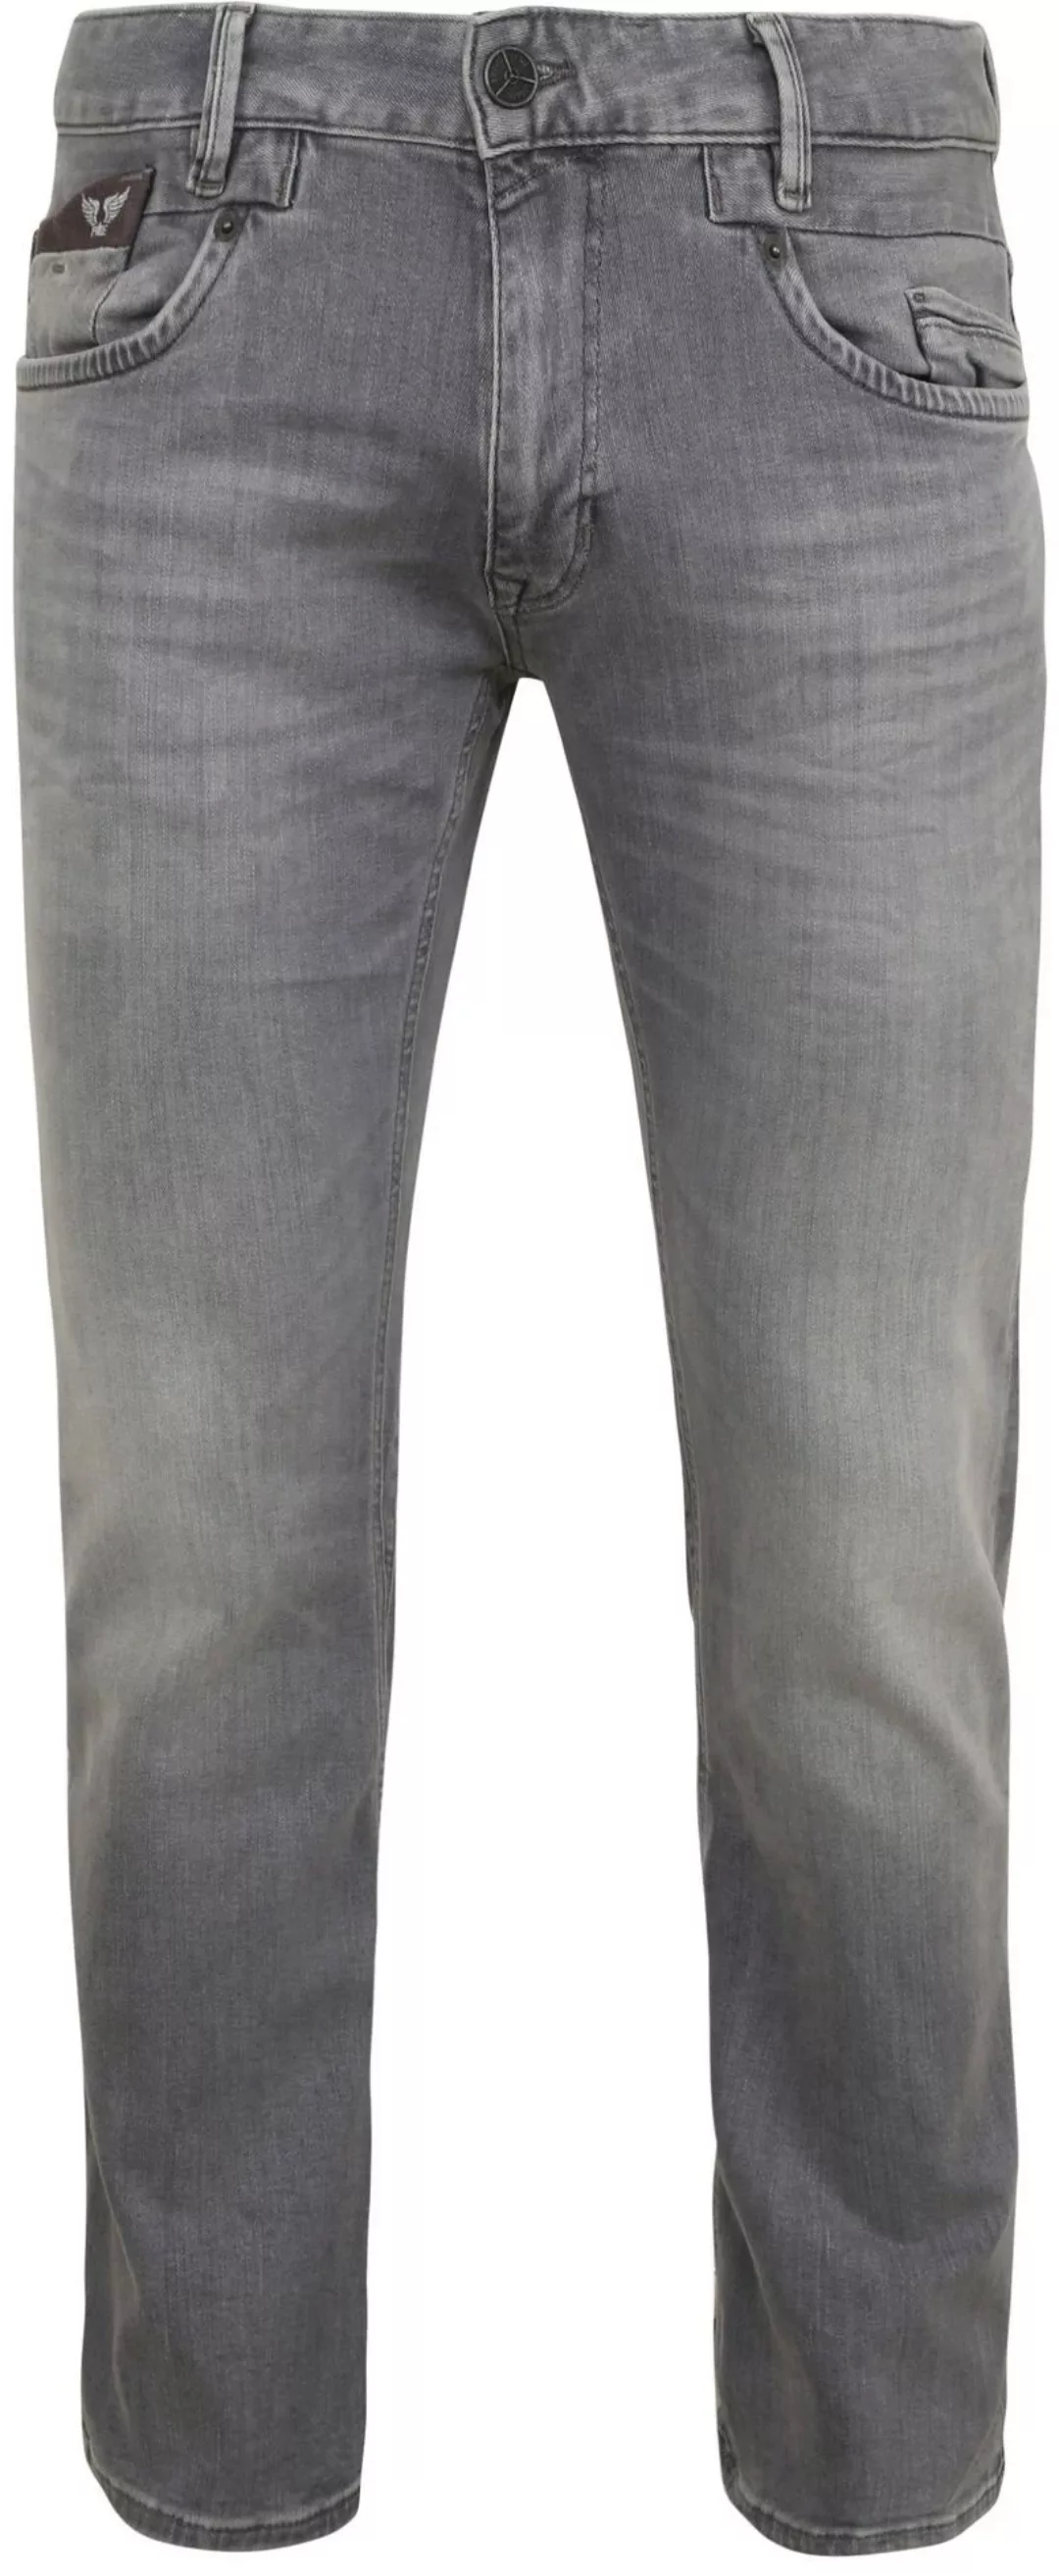 PME Legend Commander 3.0 Jeans Grau - Größe W 32 - L 32 günstig online kaufen